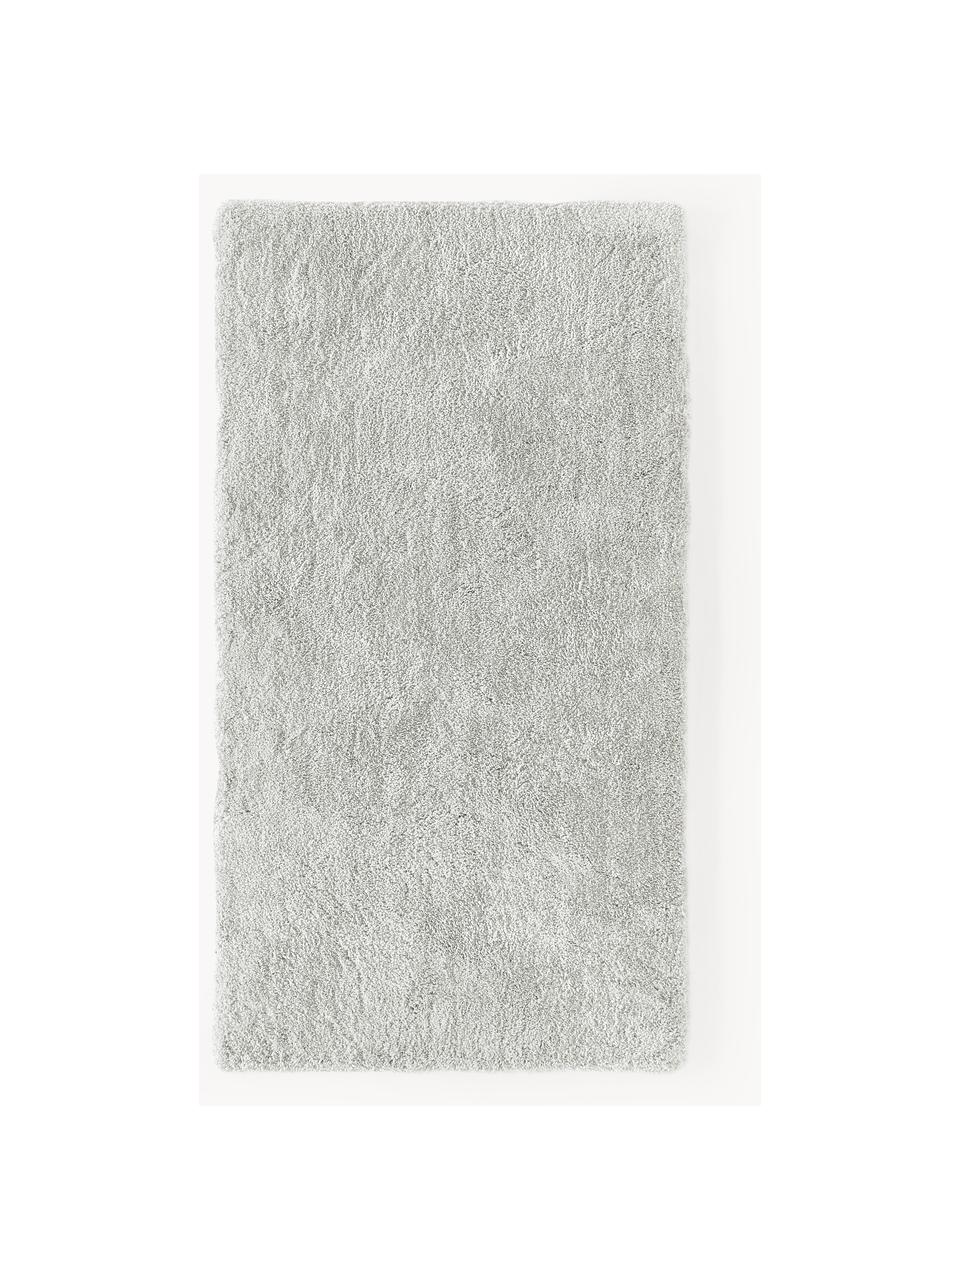 Načechraný koberec s vysokým vlasem Leighton, Světle šedá, Š 80 cm, D 150 cm (velikost XS)